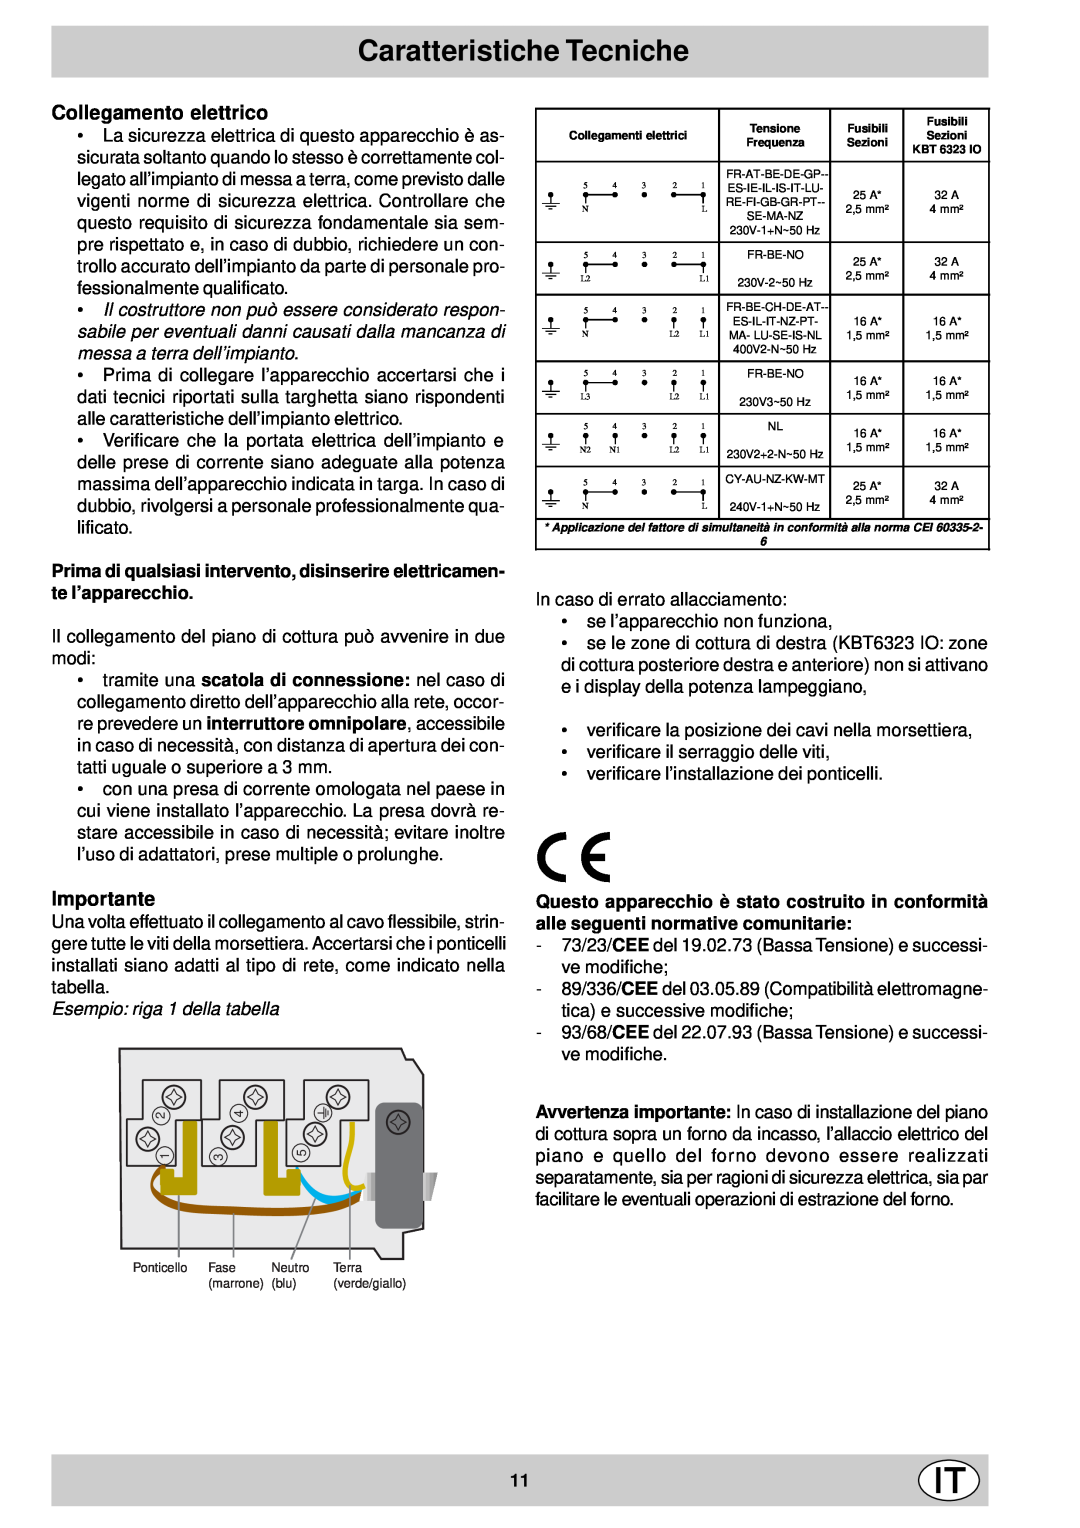 Indesit mk 64 r manual Caratteristiche Tecniche, Collegamento elettrico, Importante, Esempio riga 1 della tabella 